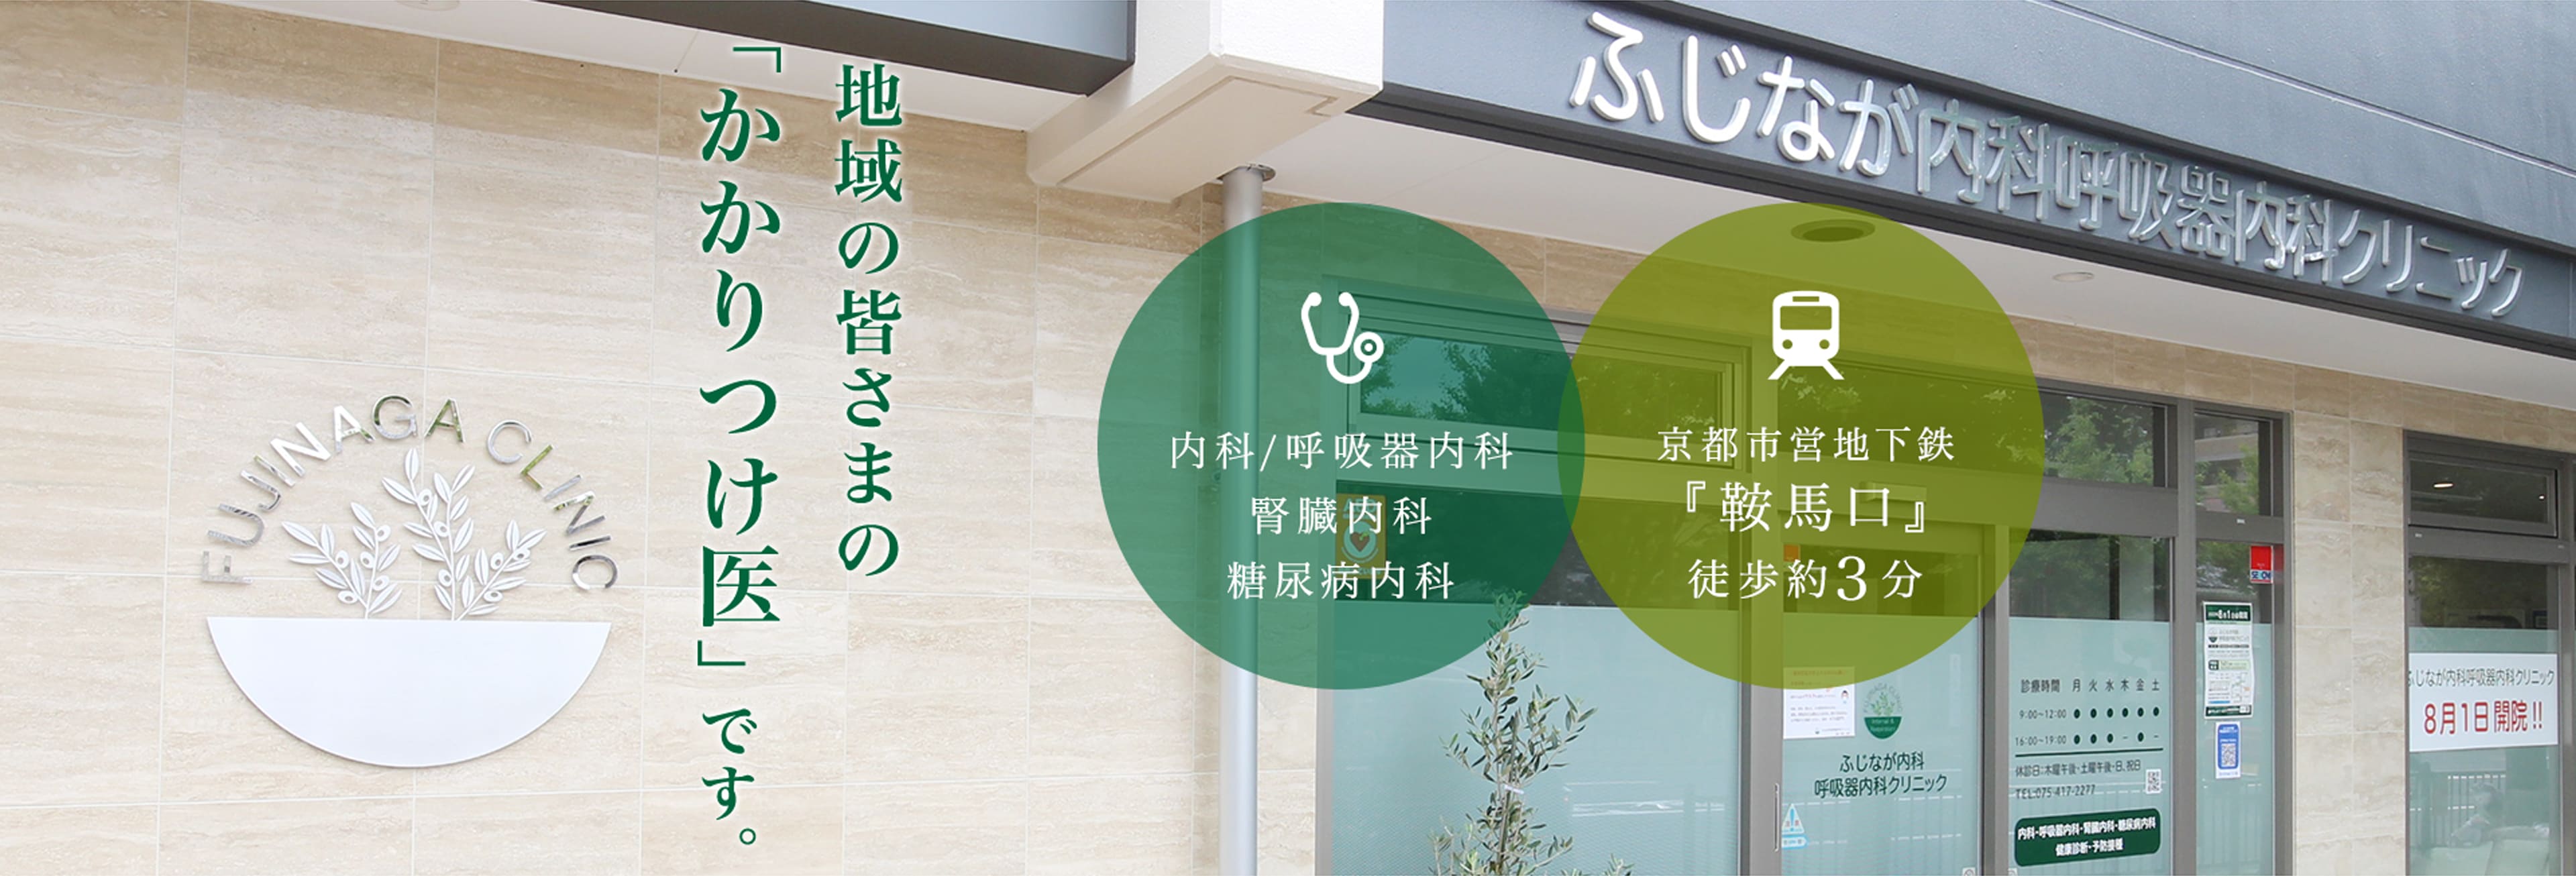 地域の皆さまの「かかりつけ医」です。内科/呼吸器内科、腎臓内科、糖尿病内科。京都市営地下鉄『鞍馬口』徒歩約3分。